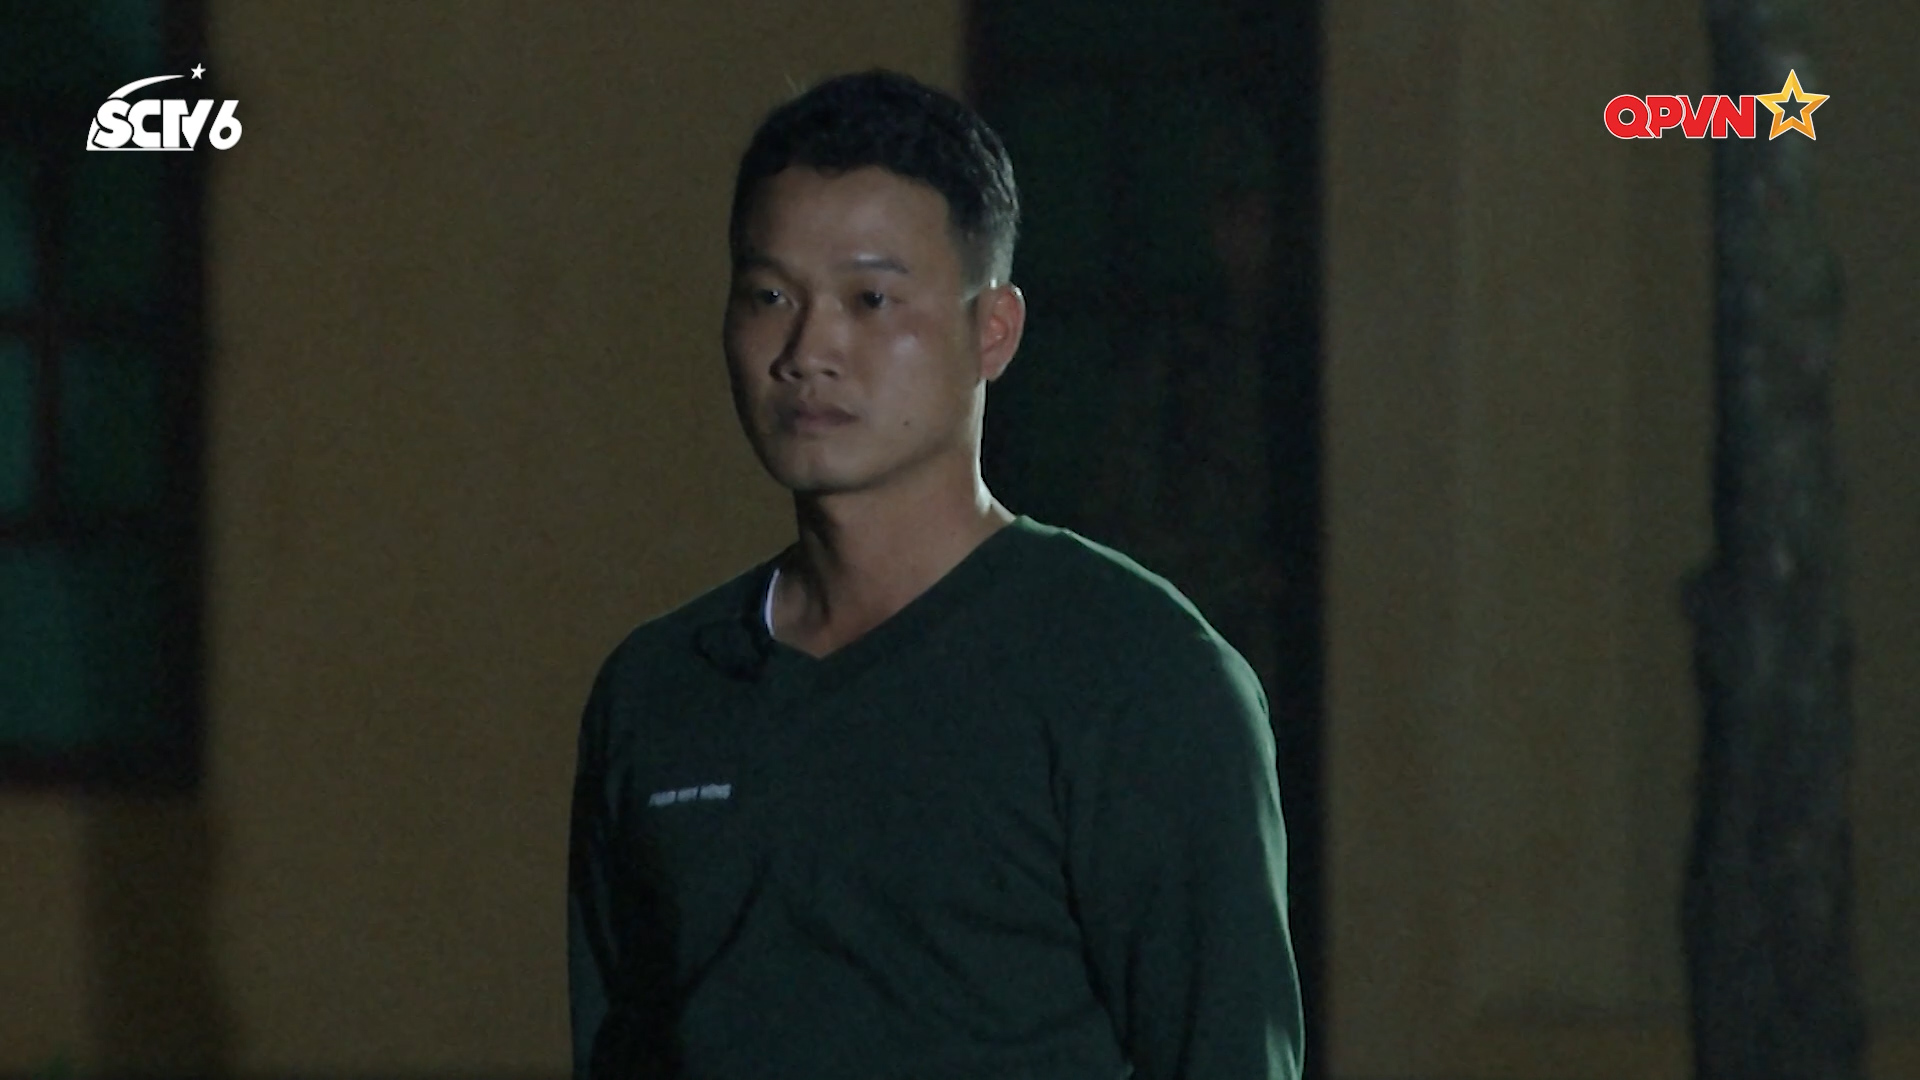 Puka nước mắt lưng tròng, Duy Khánh gặp sự cố nghiêm trọng trong Sao nhập ngũ